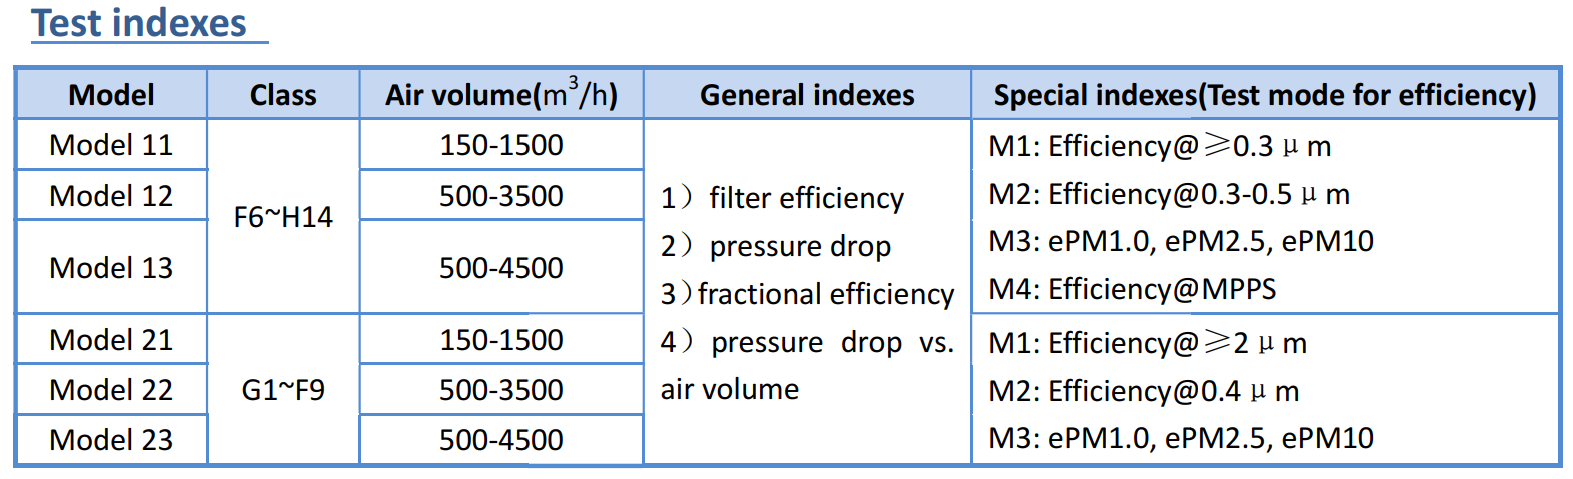 Sistema de prueba de rendimiento de filtración de aire